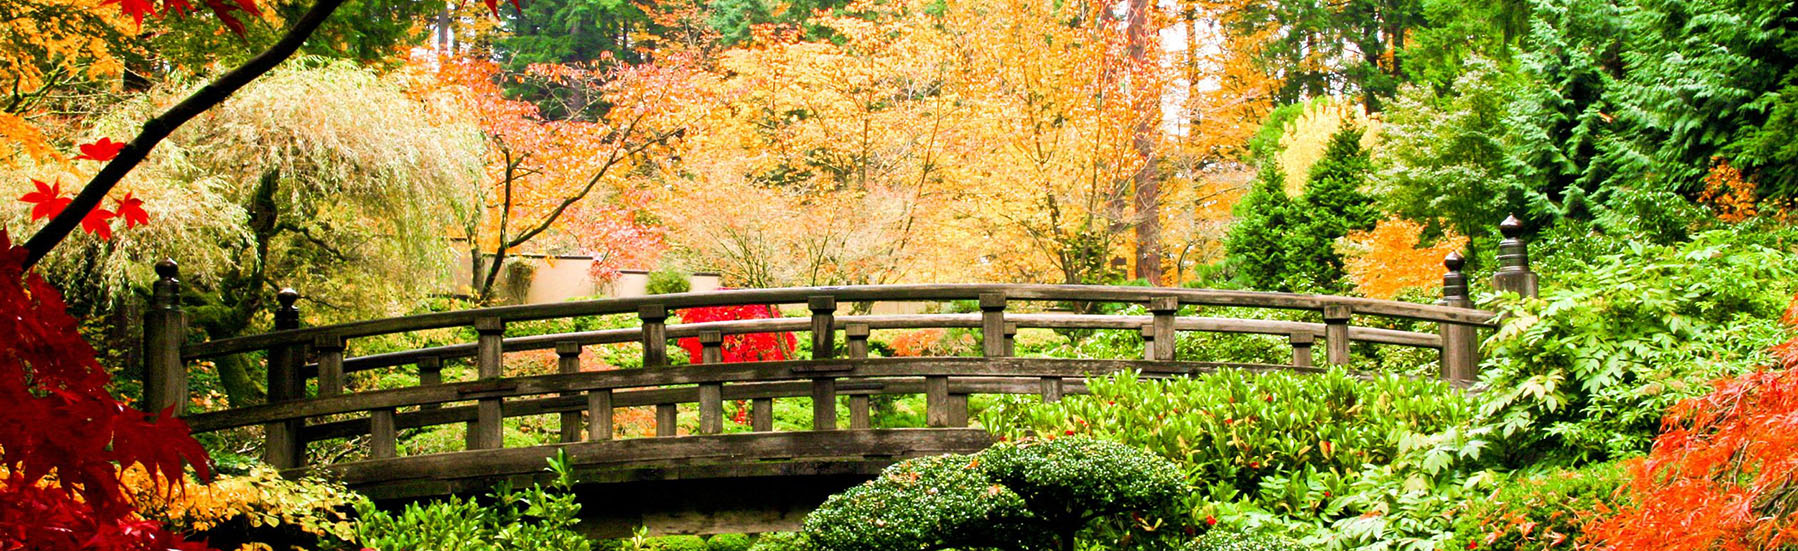 a bridge in an asian garden during fall season